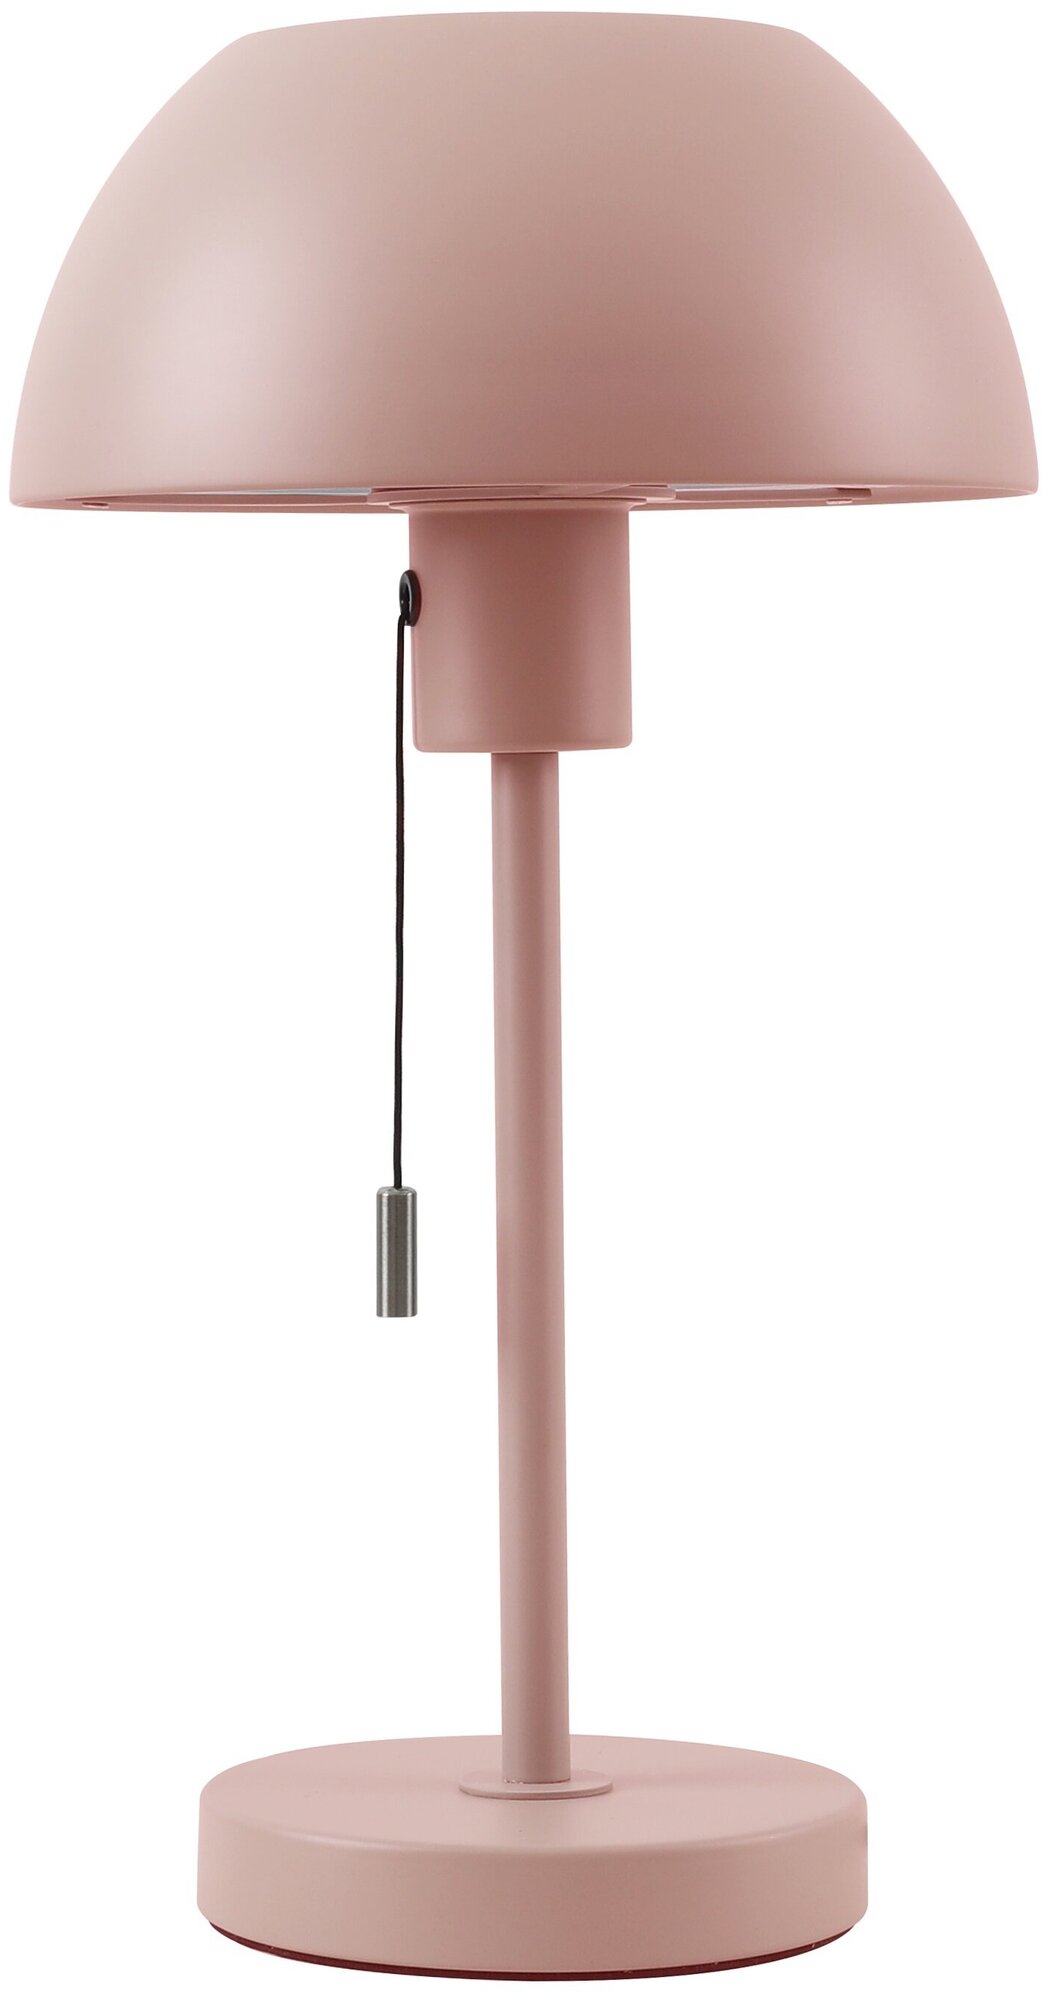 Светильник настольный HT-709R, ARTSTYLE, розовый (мат.), металлический, E27